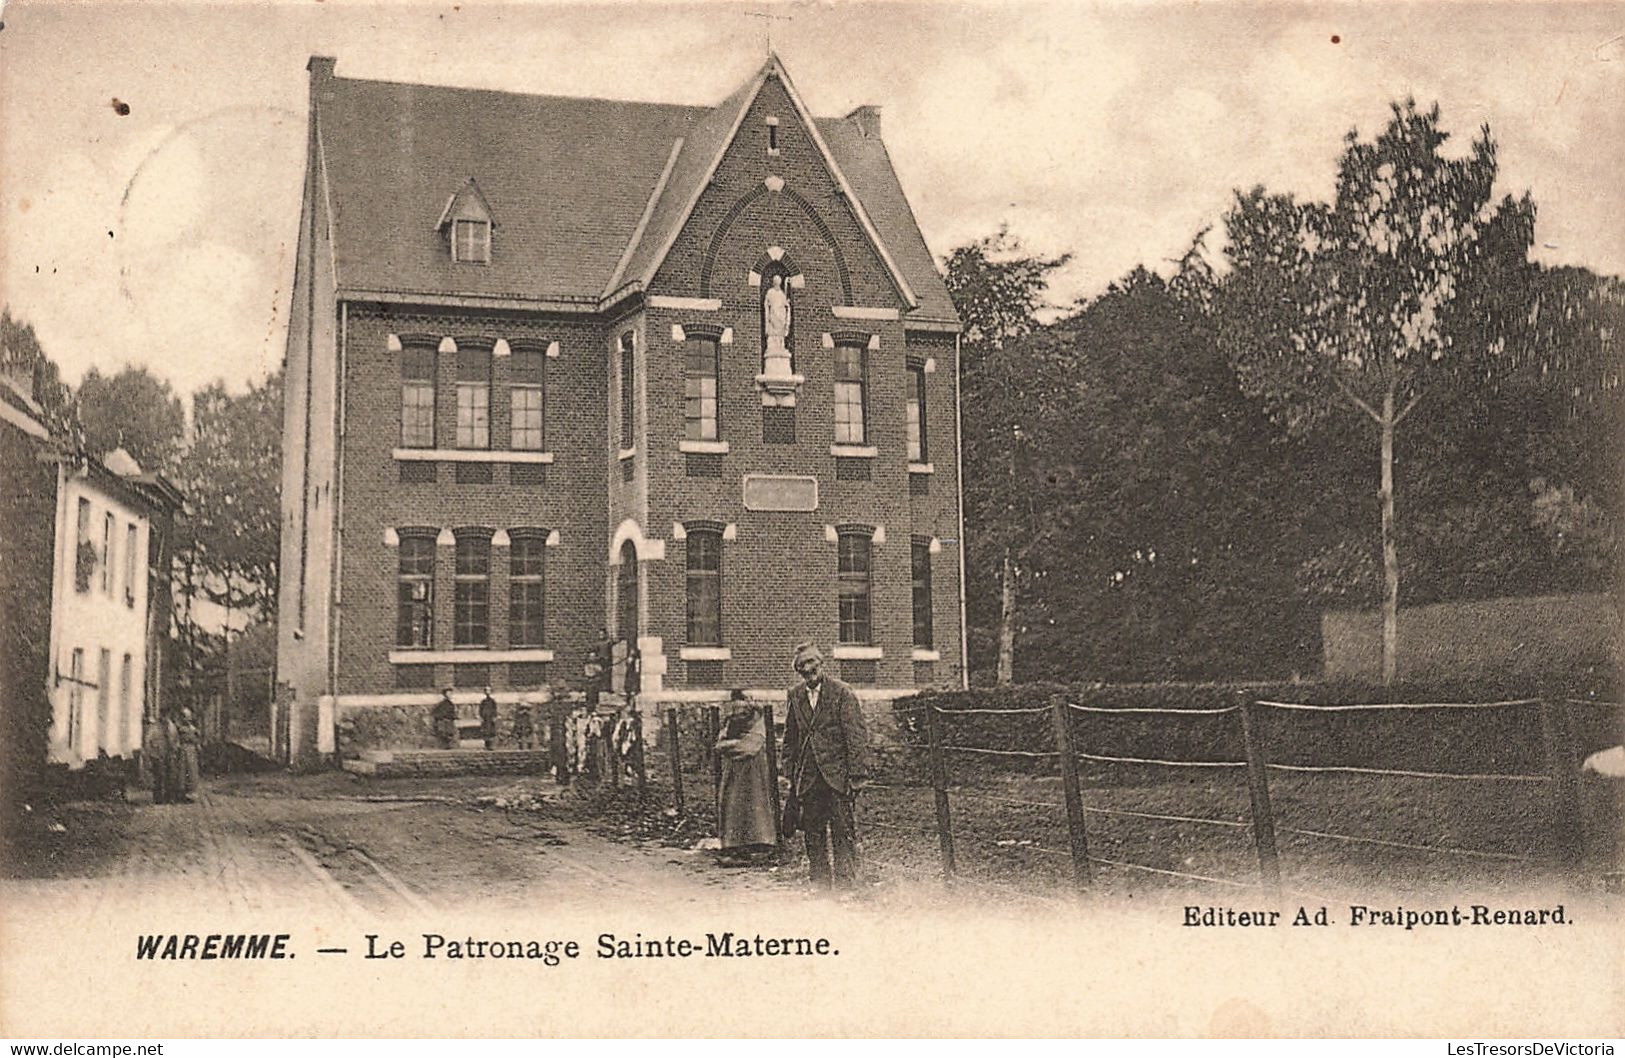 Belgique - Waremme - Le Patronnage Sainte Materne - Edit. Ad. Fraipont Renard - Précurseur - Carte Postale Ancienne - Borgworm